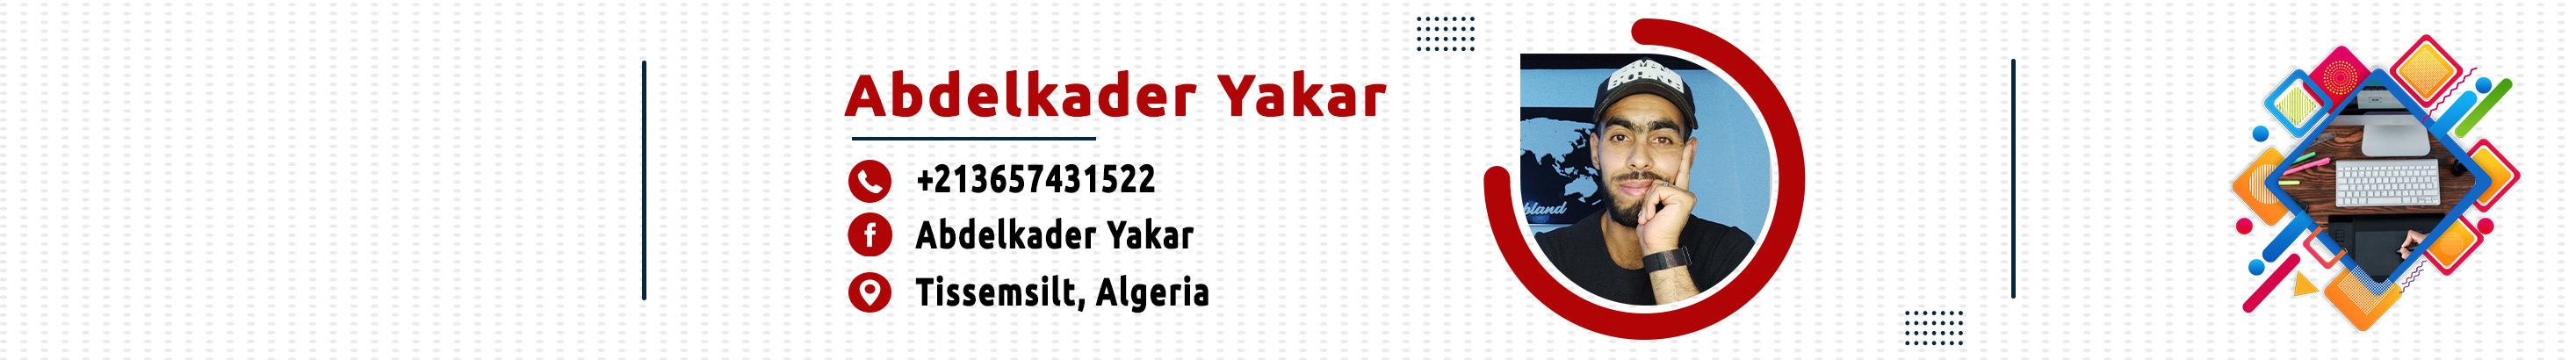 Abdelkader yakar's profile banner